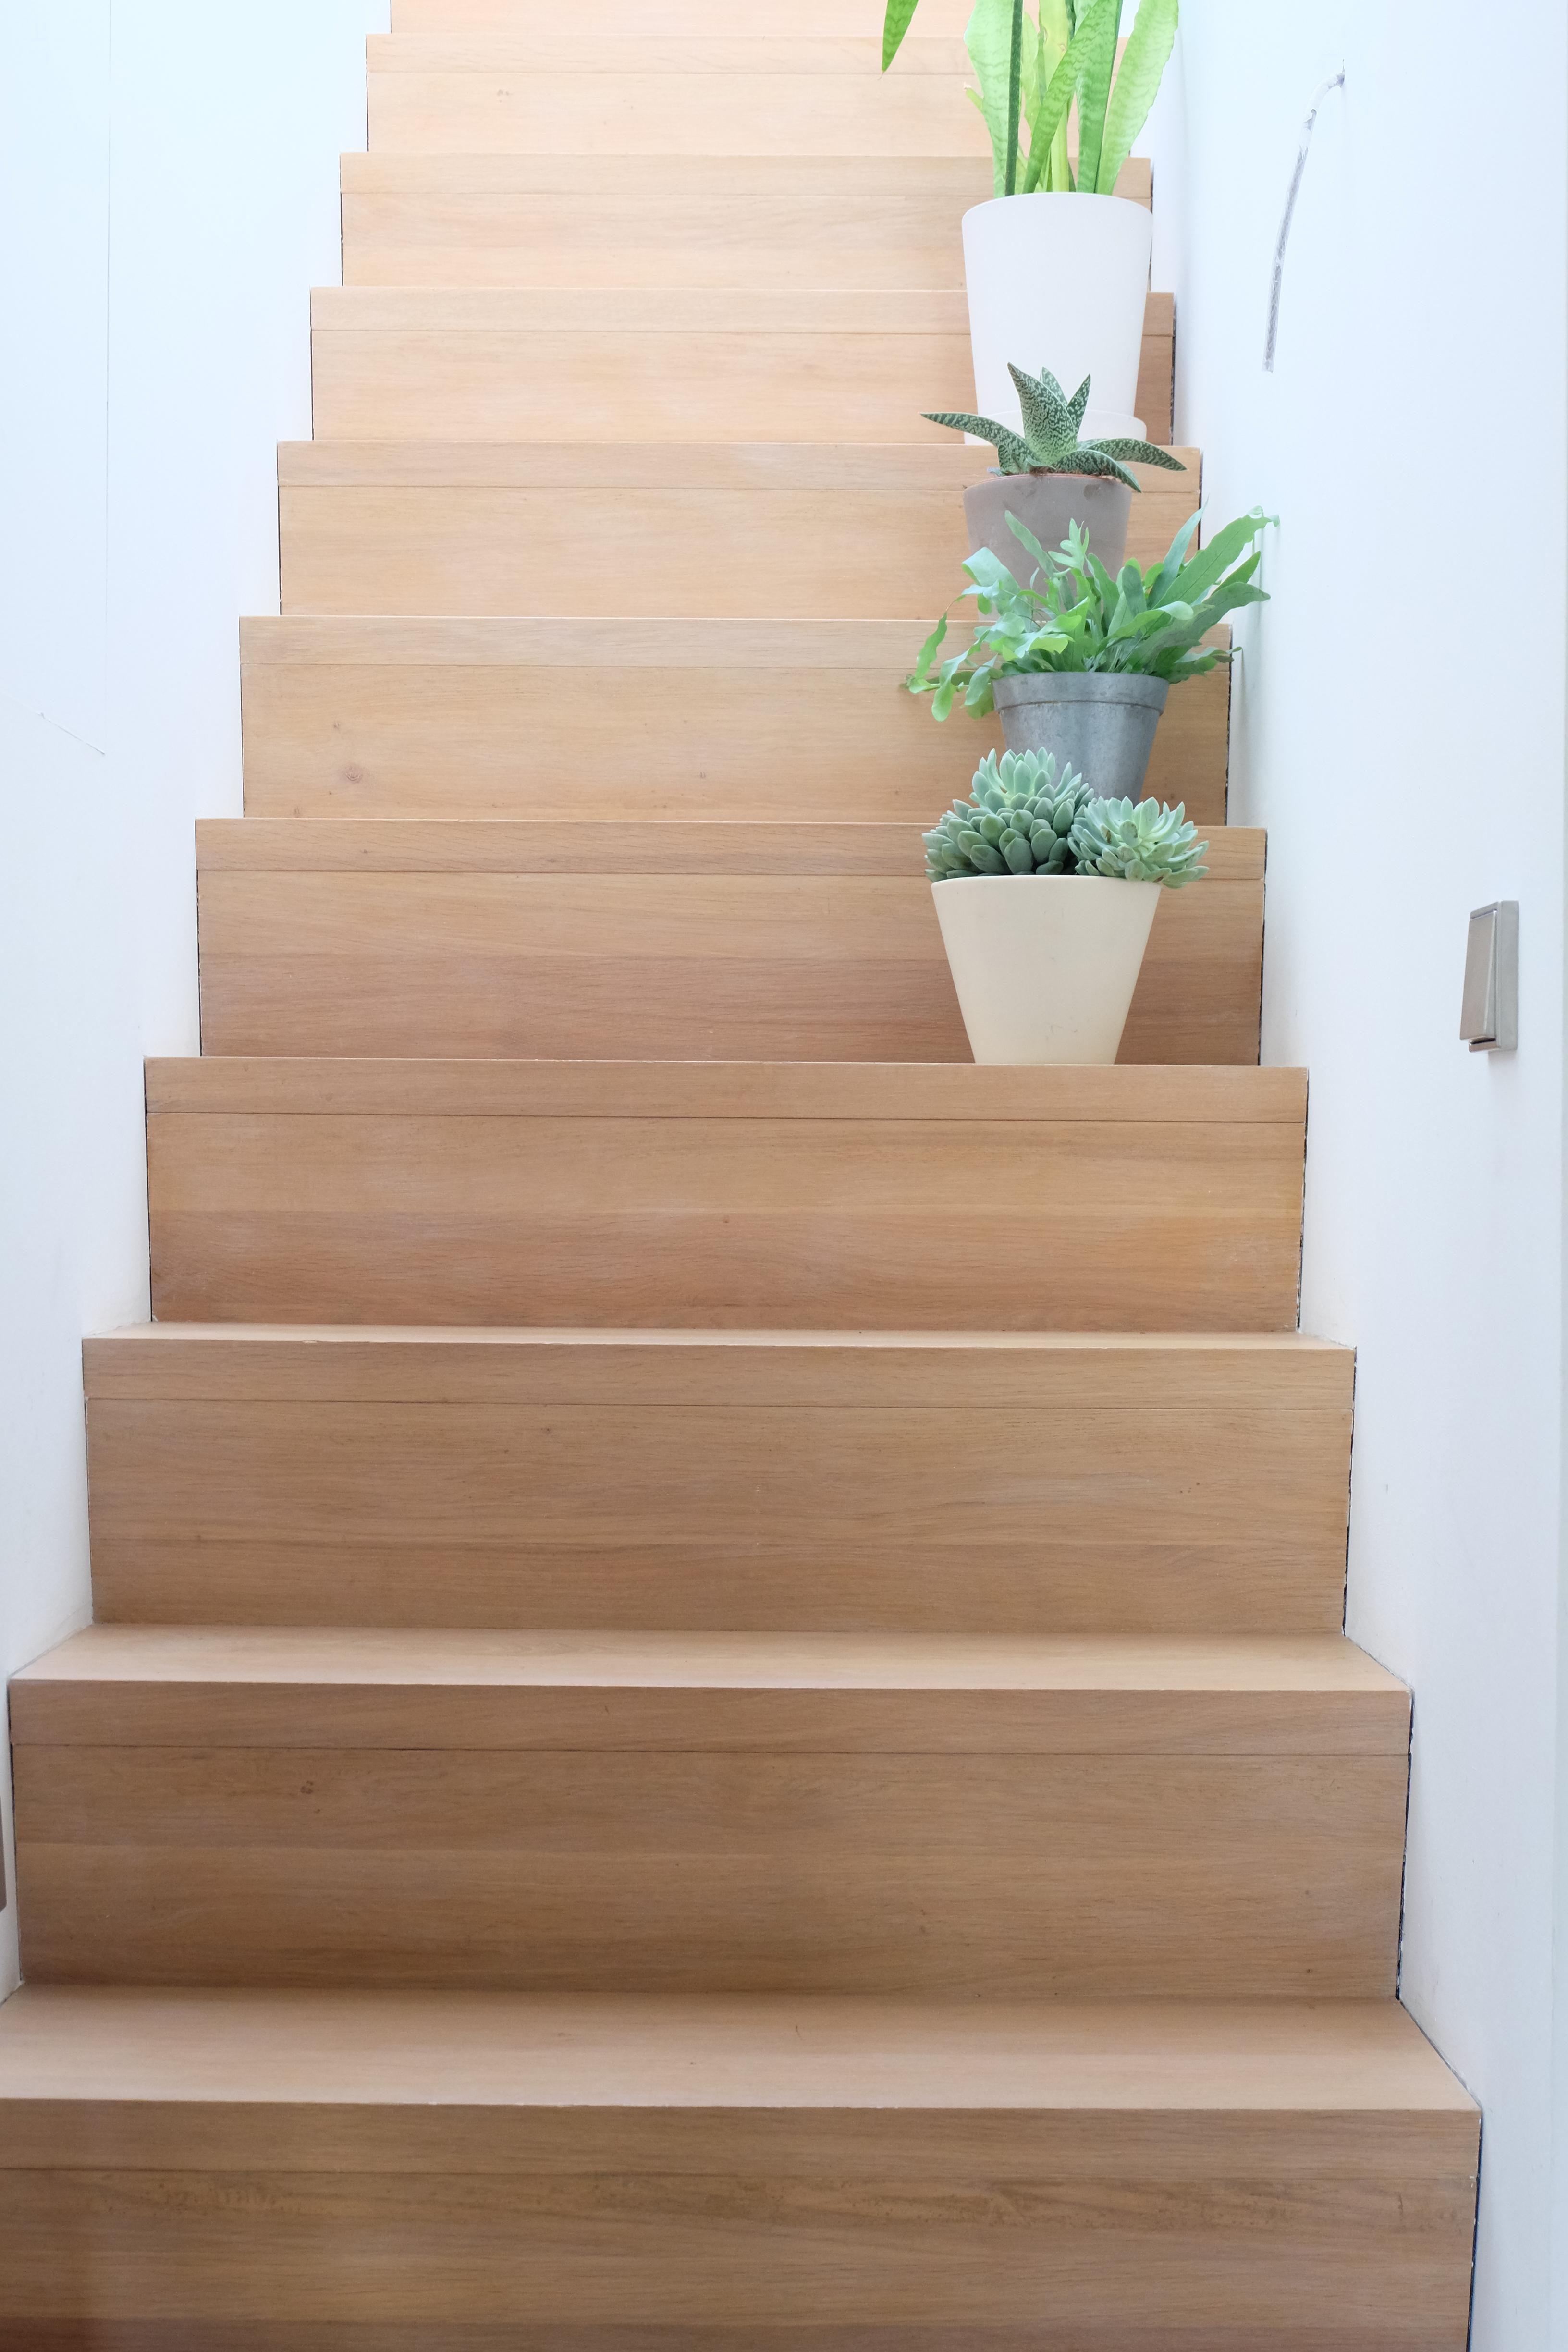 Der Aufstieg zu unserer Dachterrasse #Treppe #Dachterrasse #minimalistisch #Pflanzen